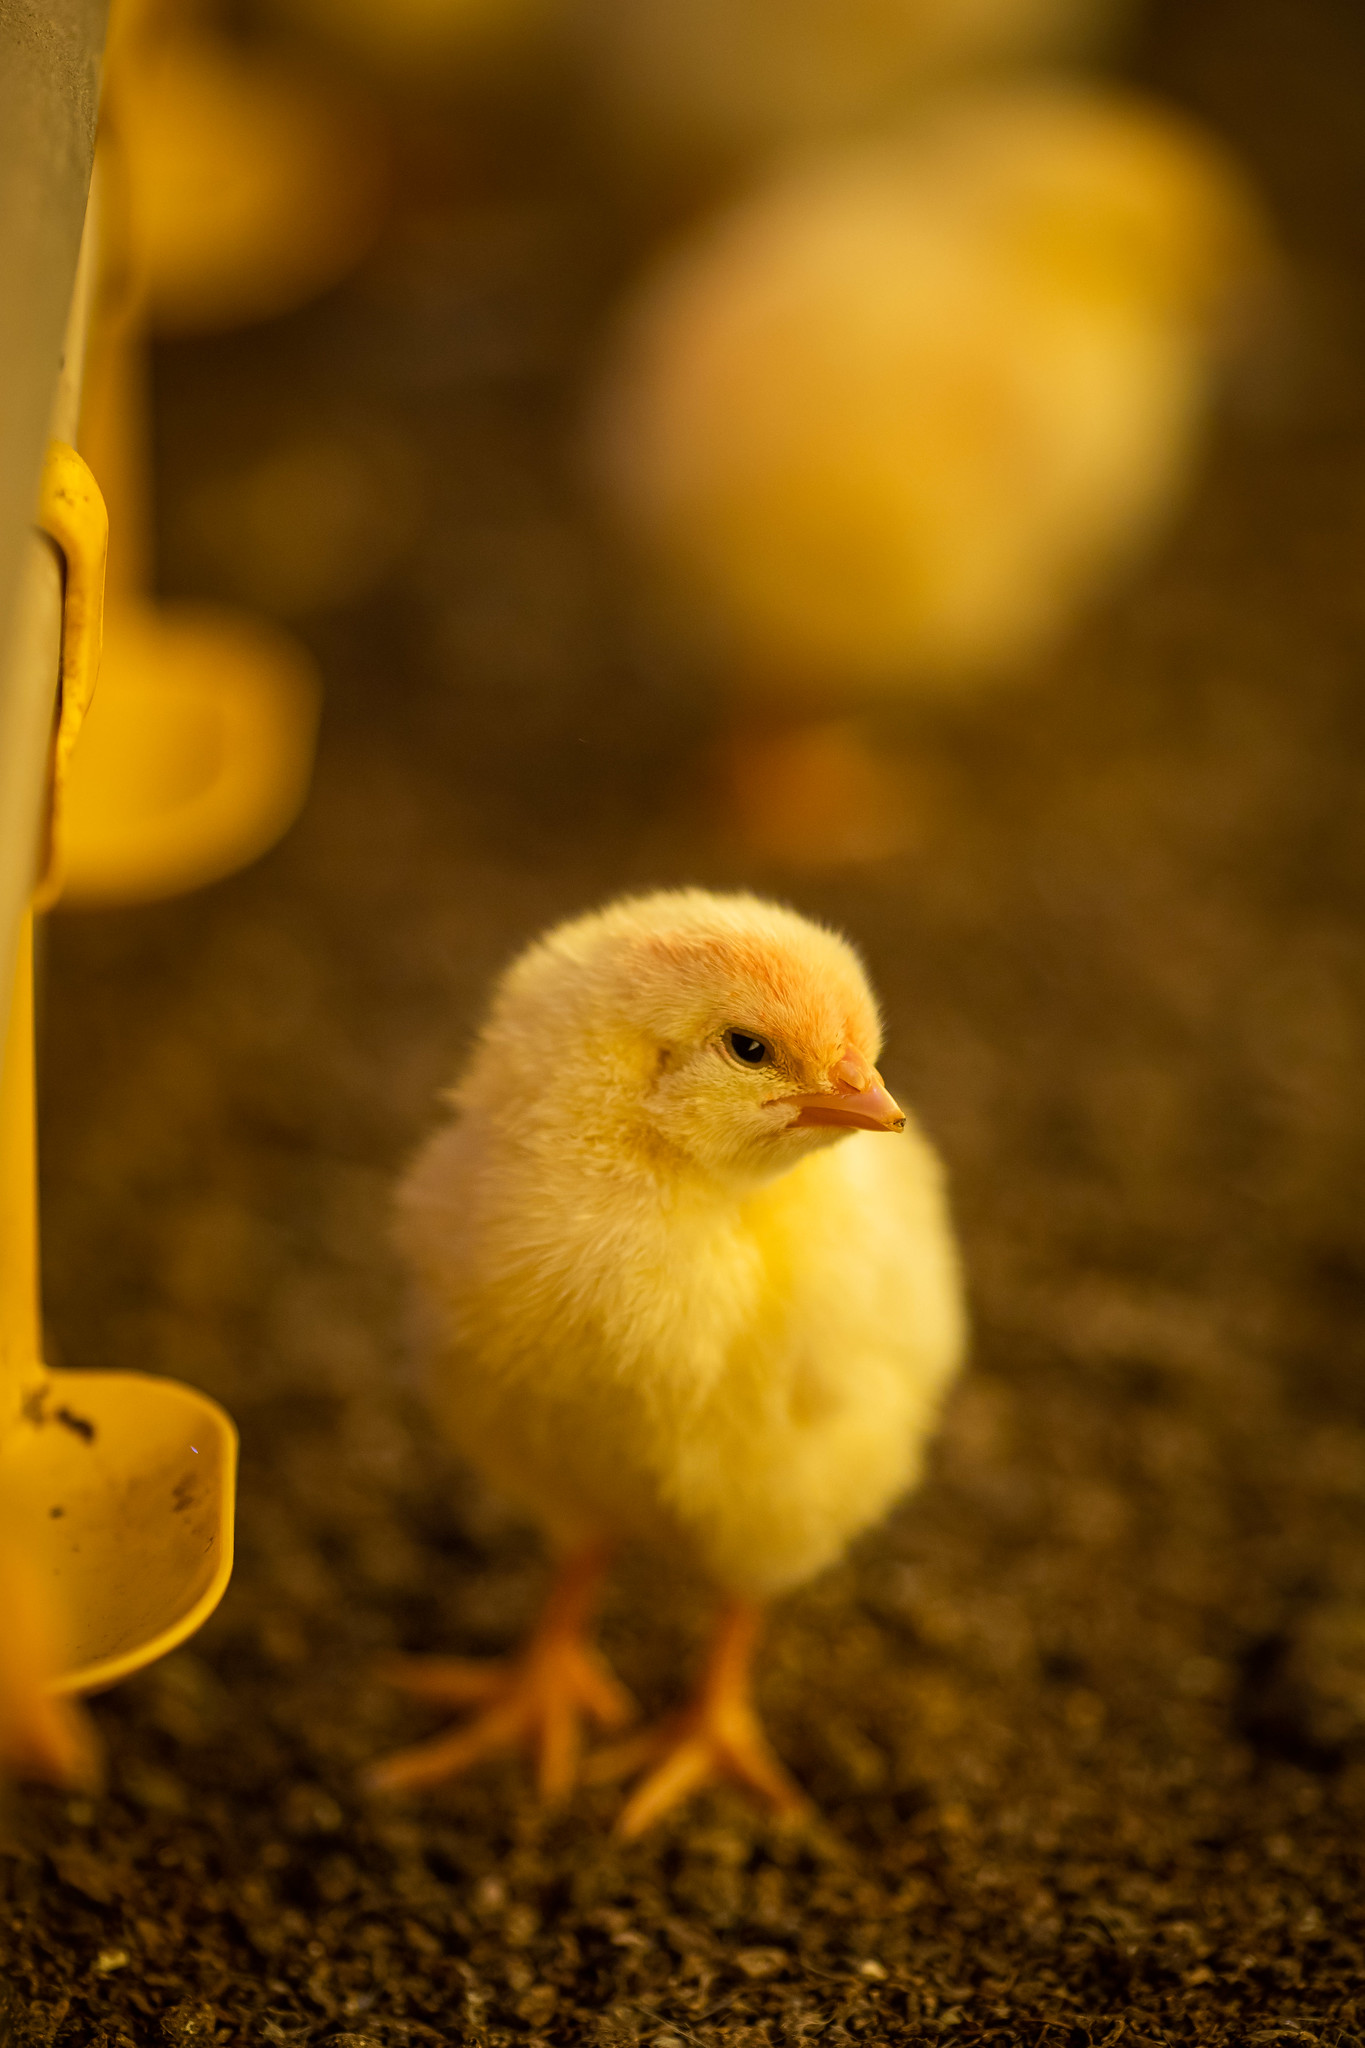 Gastos com calefacao reforcam cenario desfavoravel na avicultura